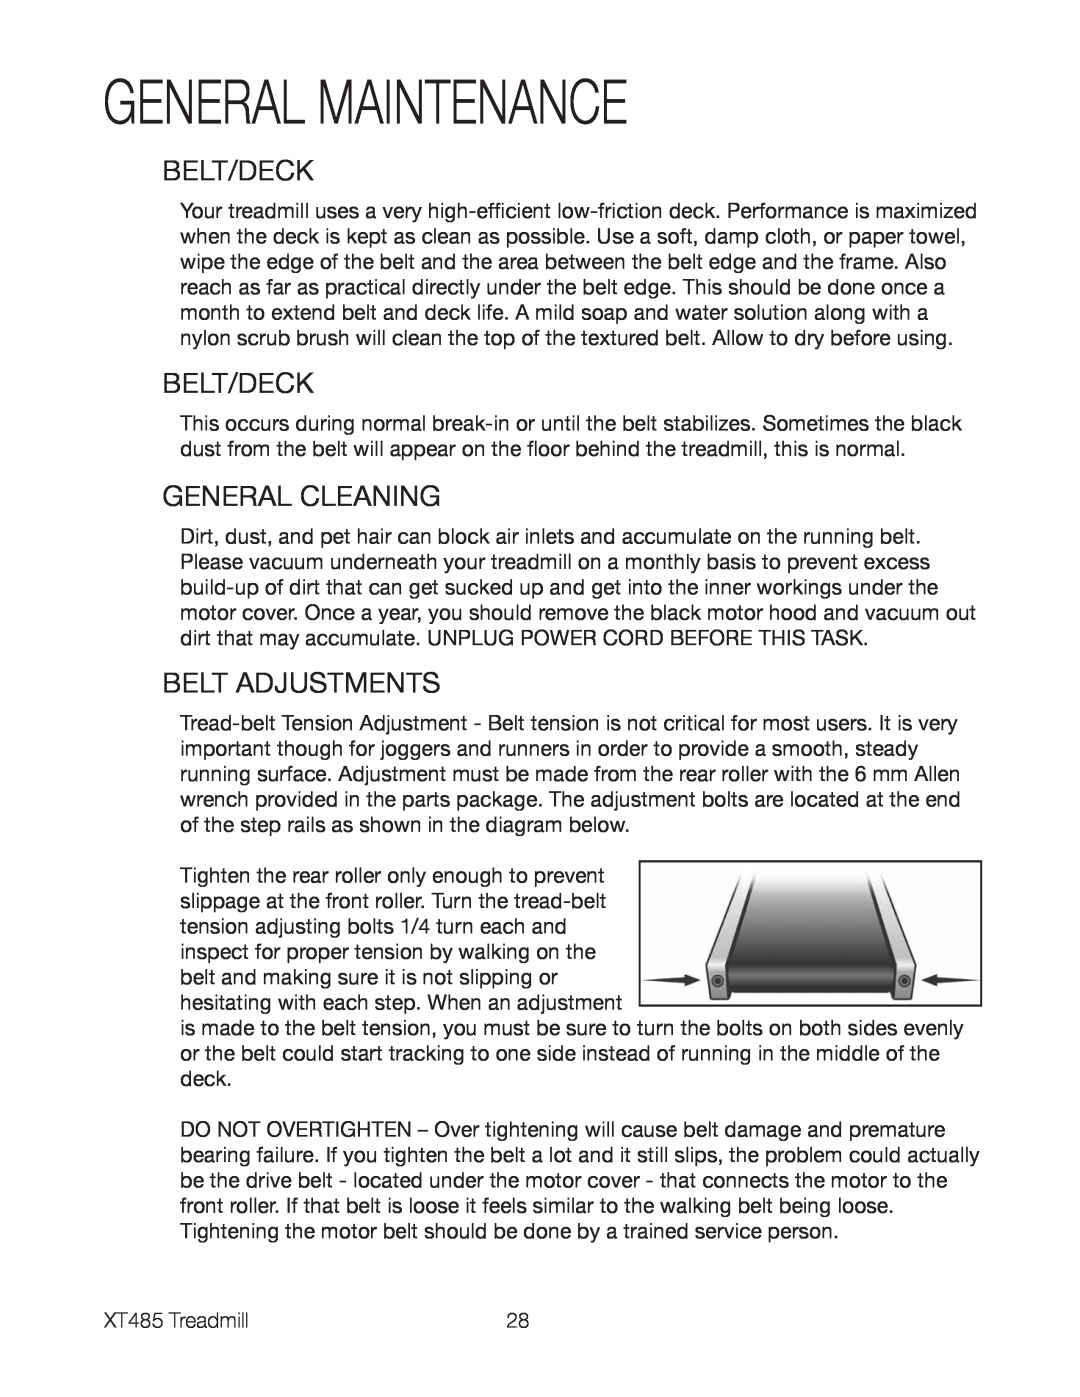 Spirit XT485 owner manual General Maintenance, Belt/Deck, General Cleaning, Belt Adjustments 